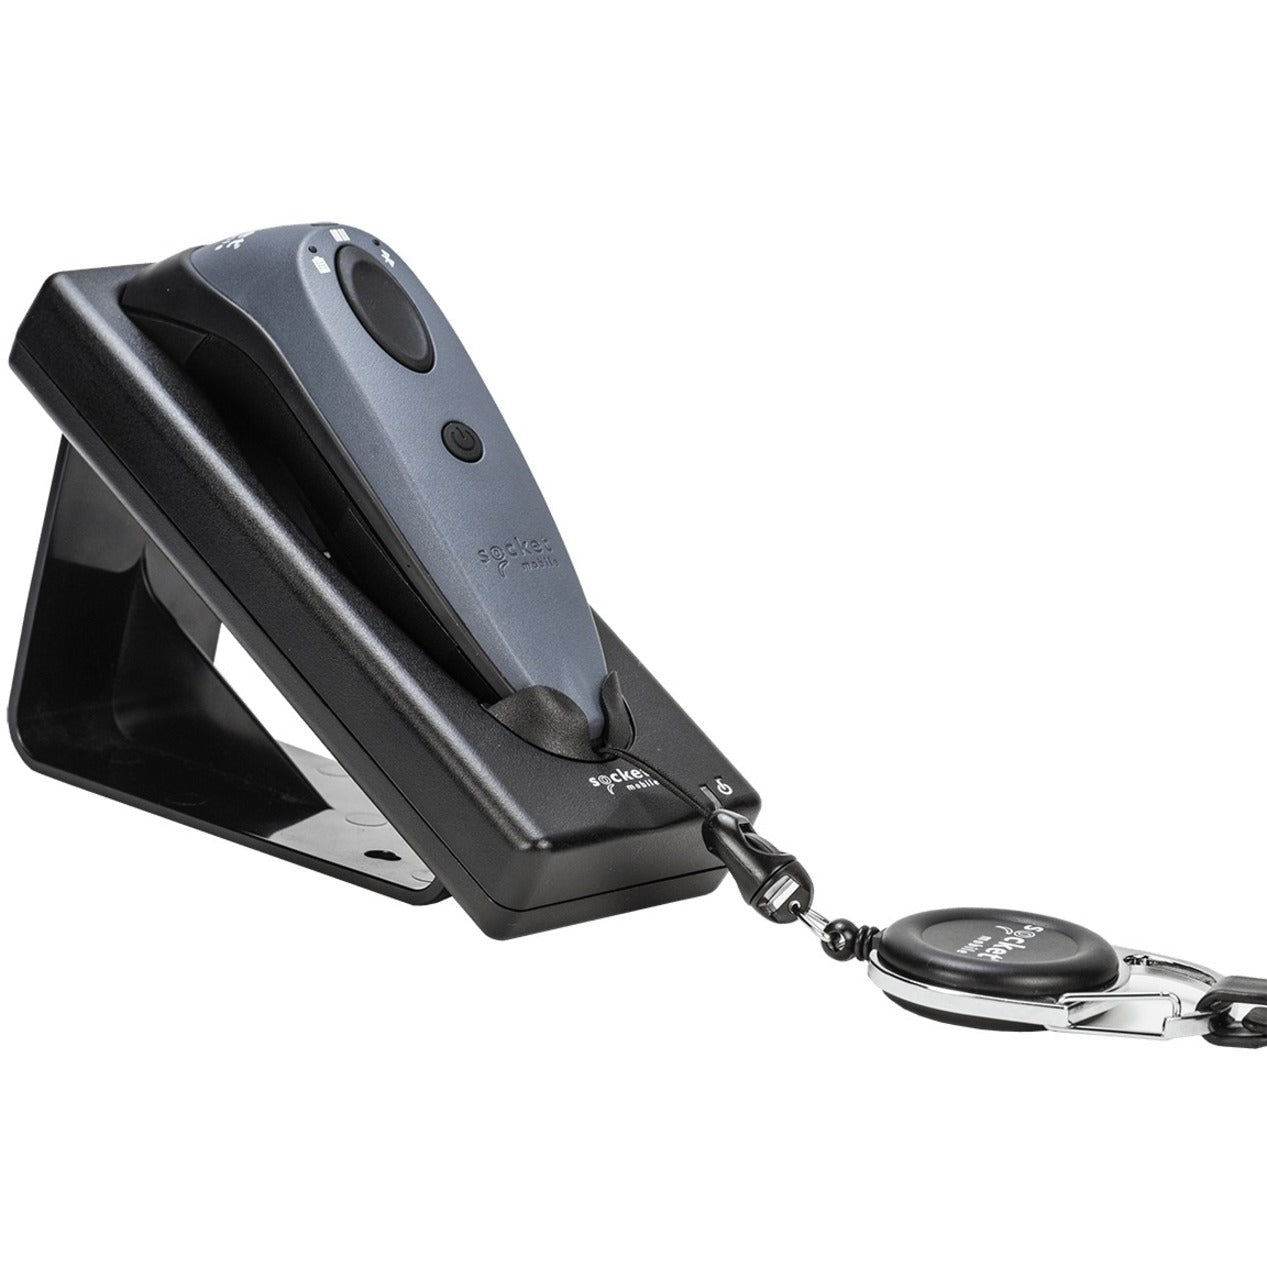 Prise mobile AC4102-1695 pour scanners de codes-barres DuraScan noir - Solution de station d'accueil et de charge pratique